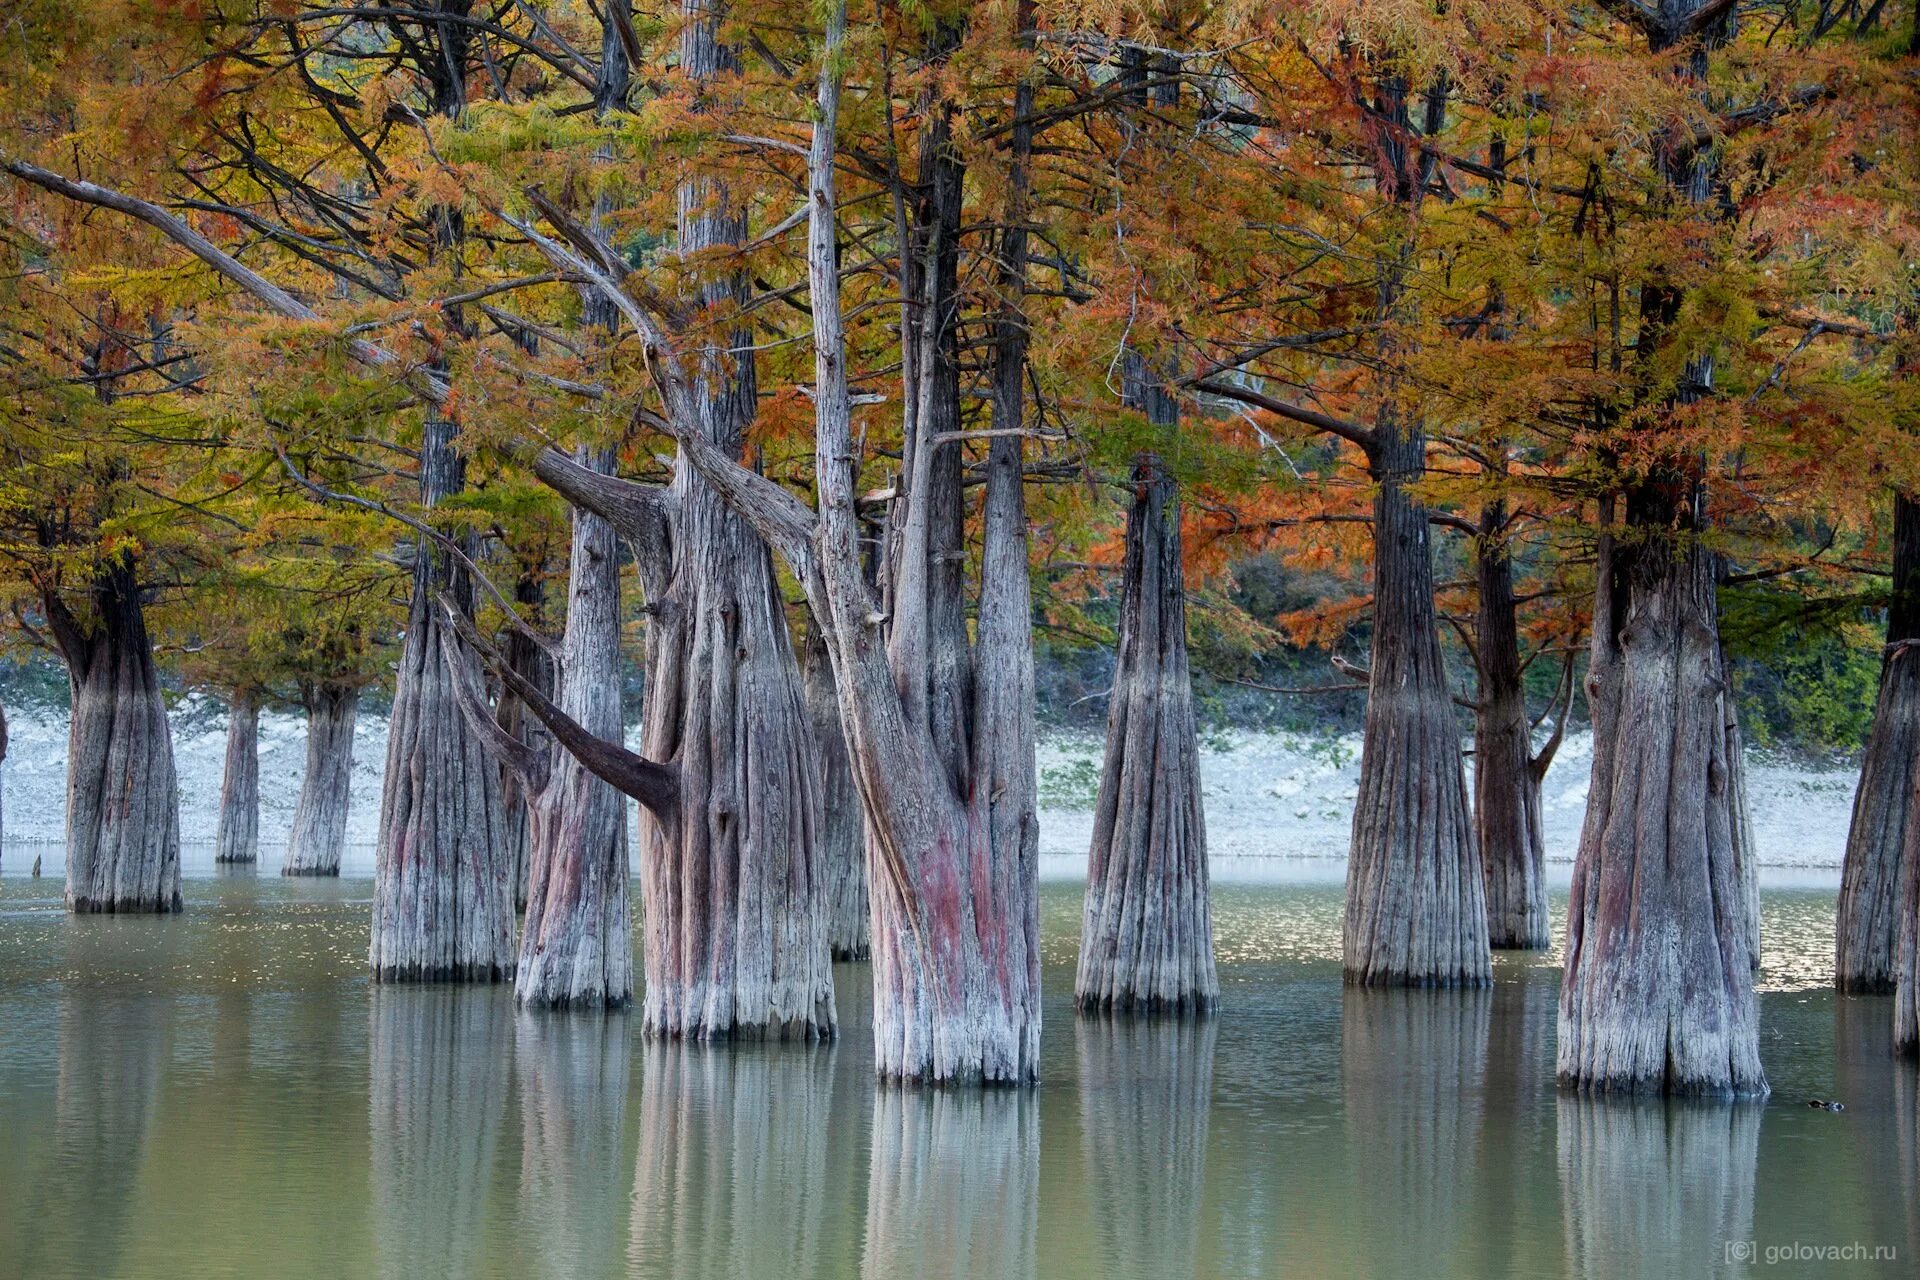 Деревья смотрят в воду. Кипарисовое озеро в Анапе. Сукко Анапа Кипарисовое озеро. Кипарисовая роща в Сукко. Озеро Сукко Кипарисовое озеро.